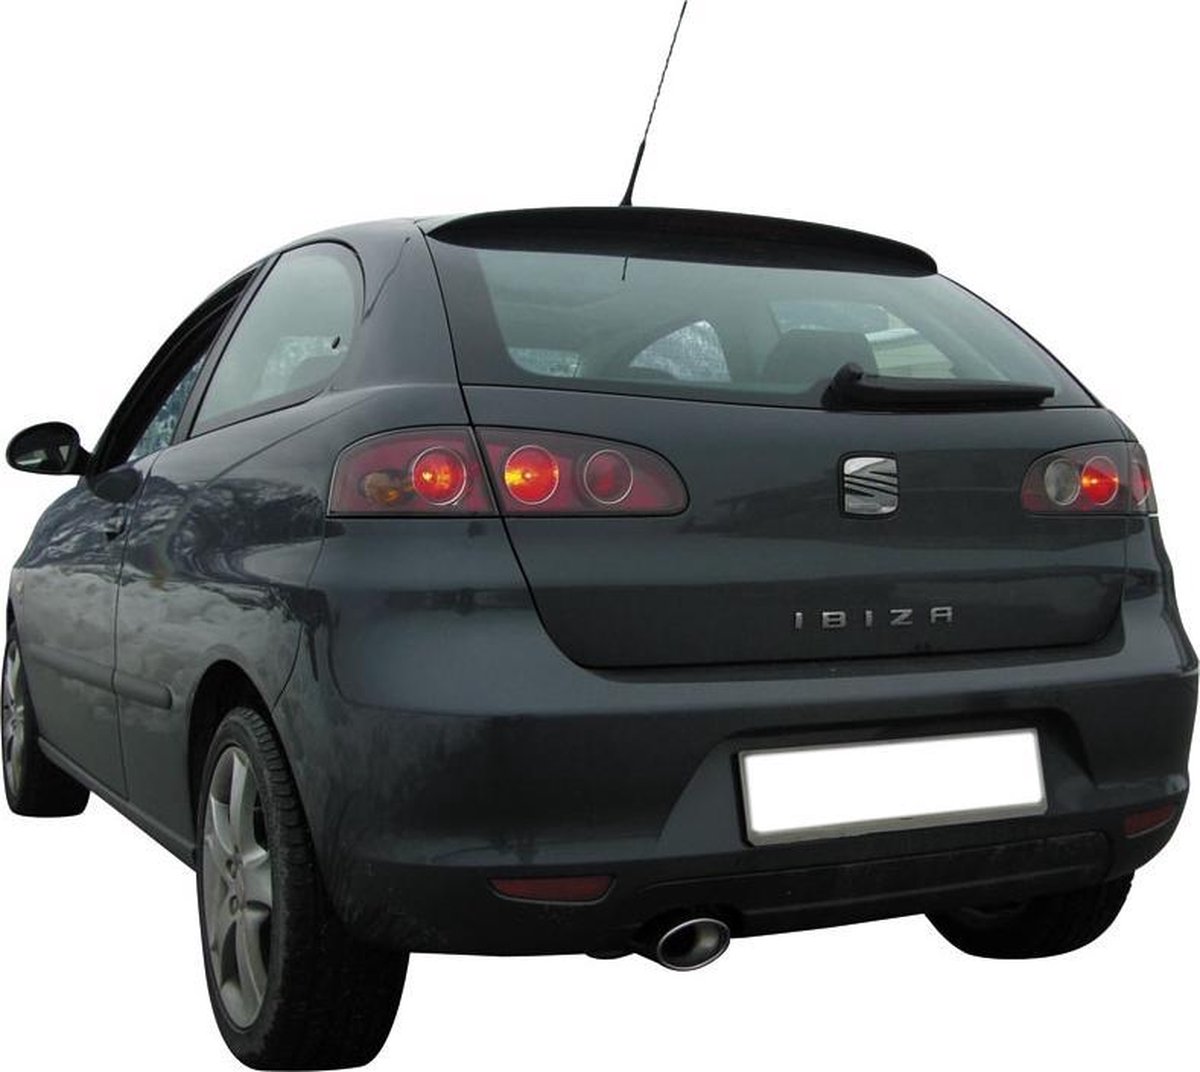 InoXcar 100% RVS Sportuitlaat passend voor Seat Ibiza 6L 1.4 TDi (75pk) 2002- 120x80mm